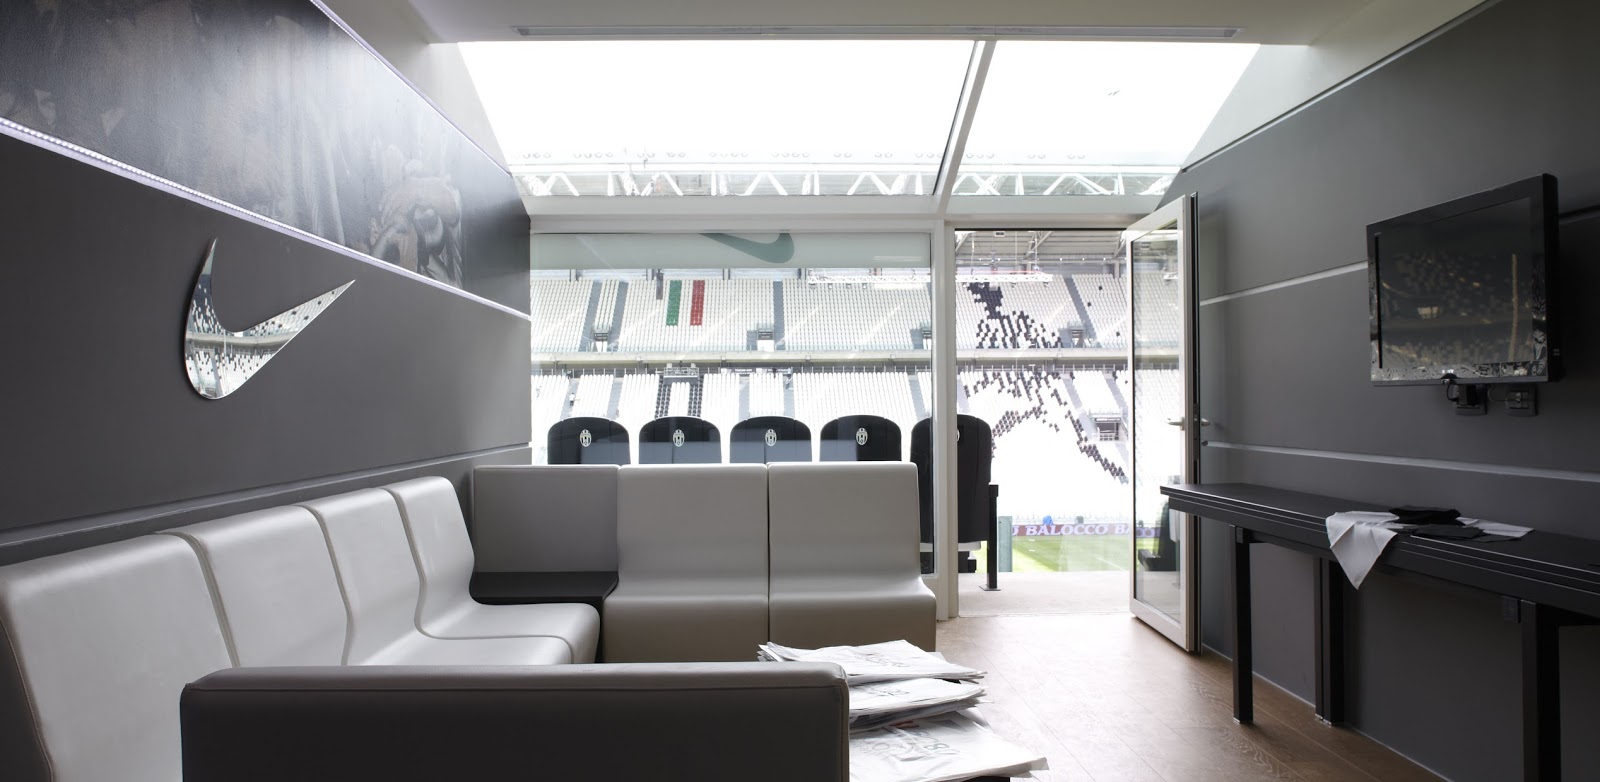 Allianz (Juventus) Stadium